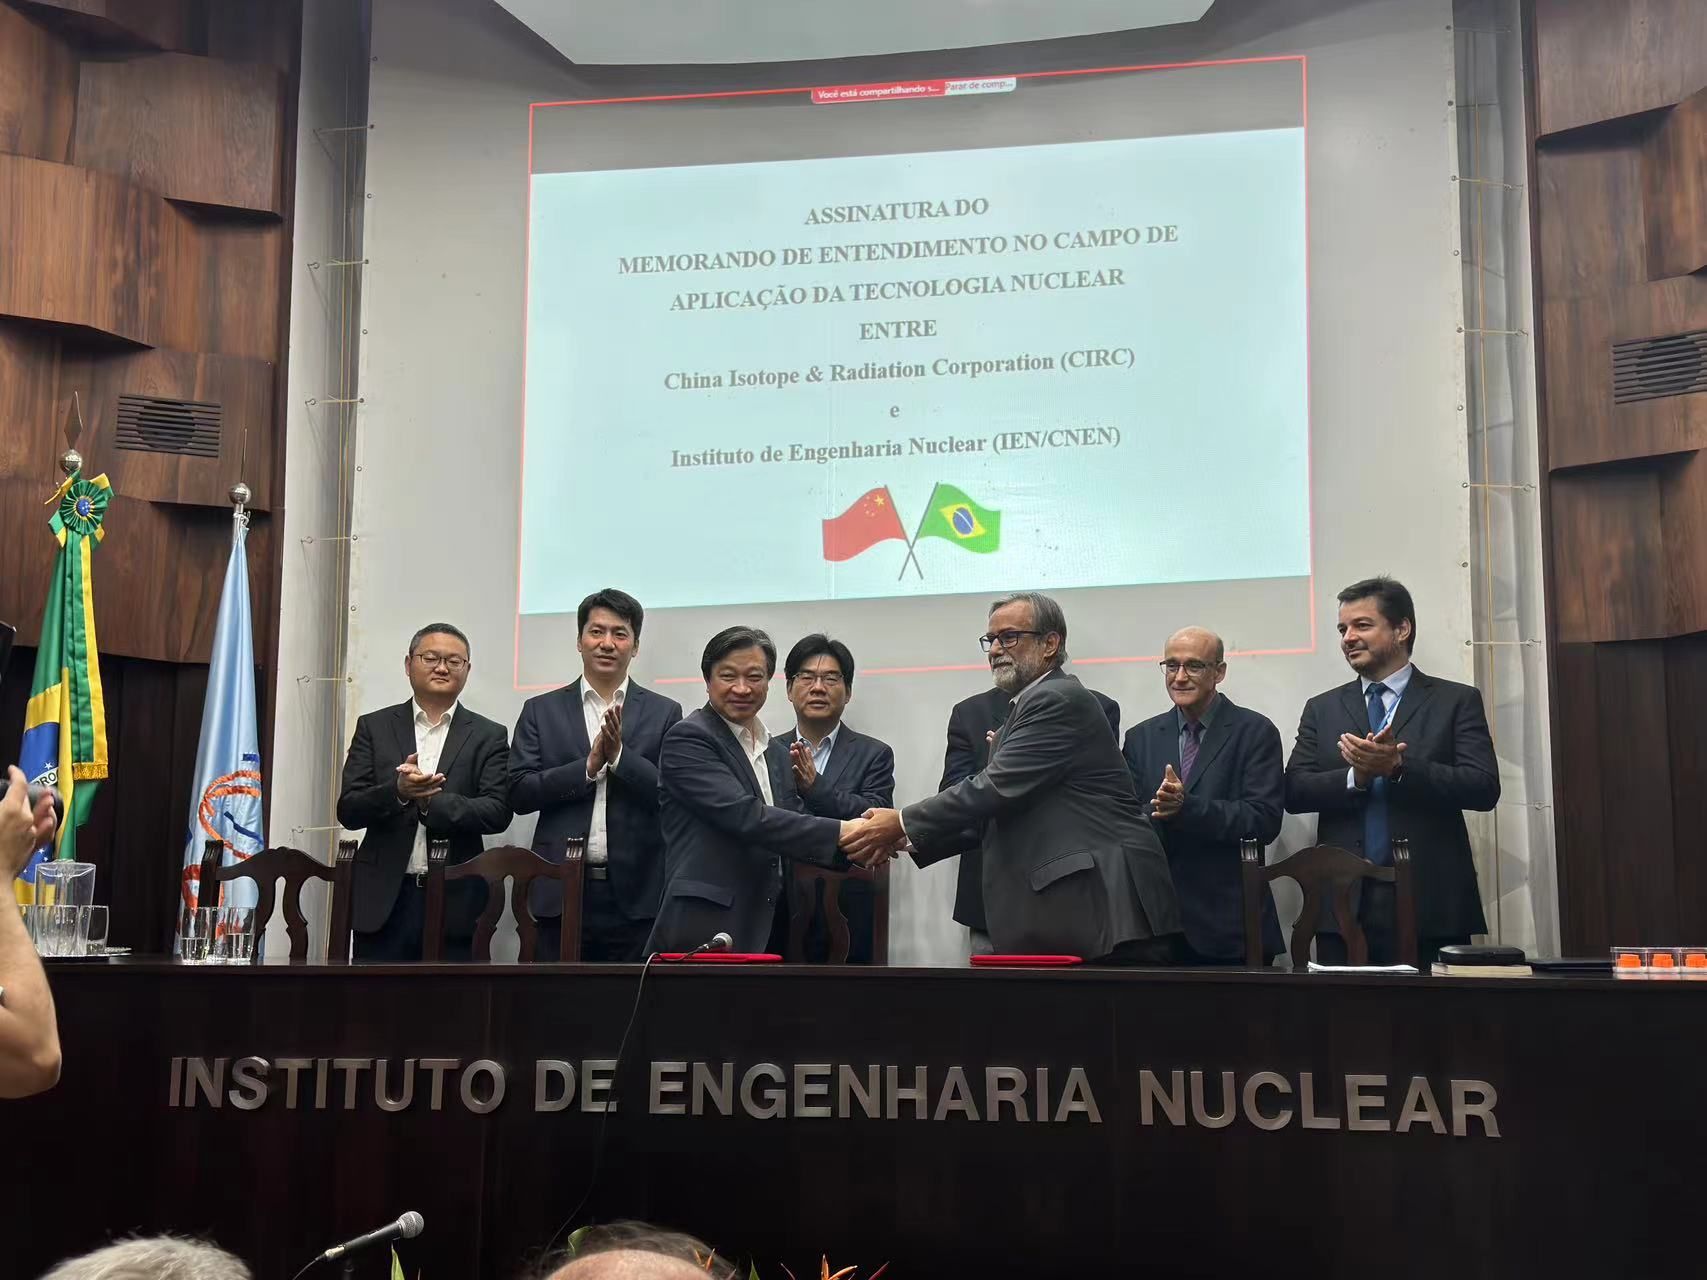 图片7 -(中国同辐与巴西核工程研究院IEN签署谅解备忘录)